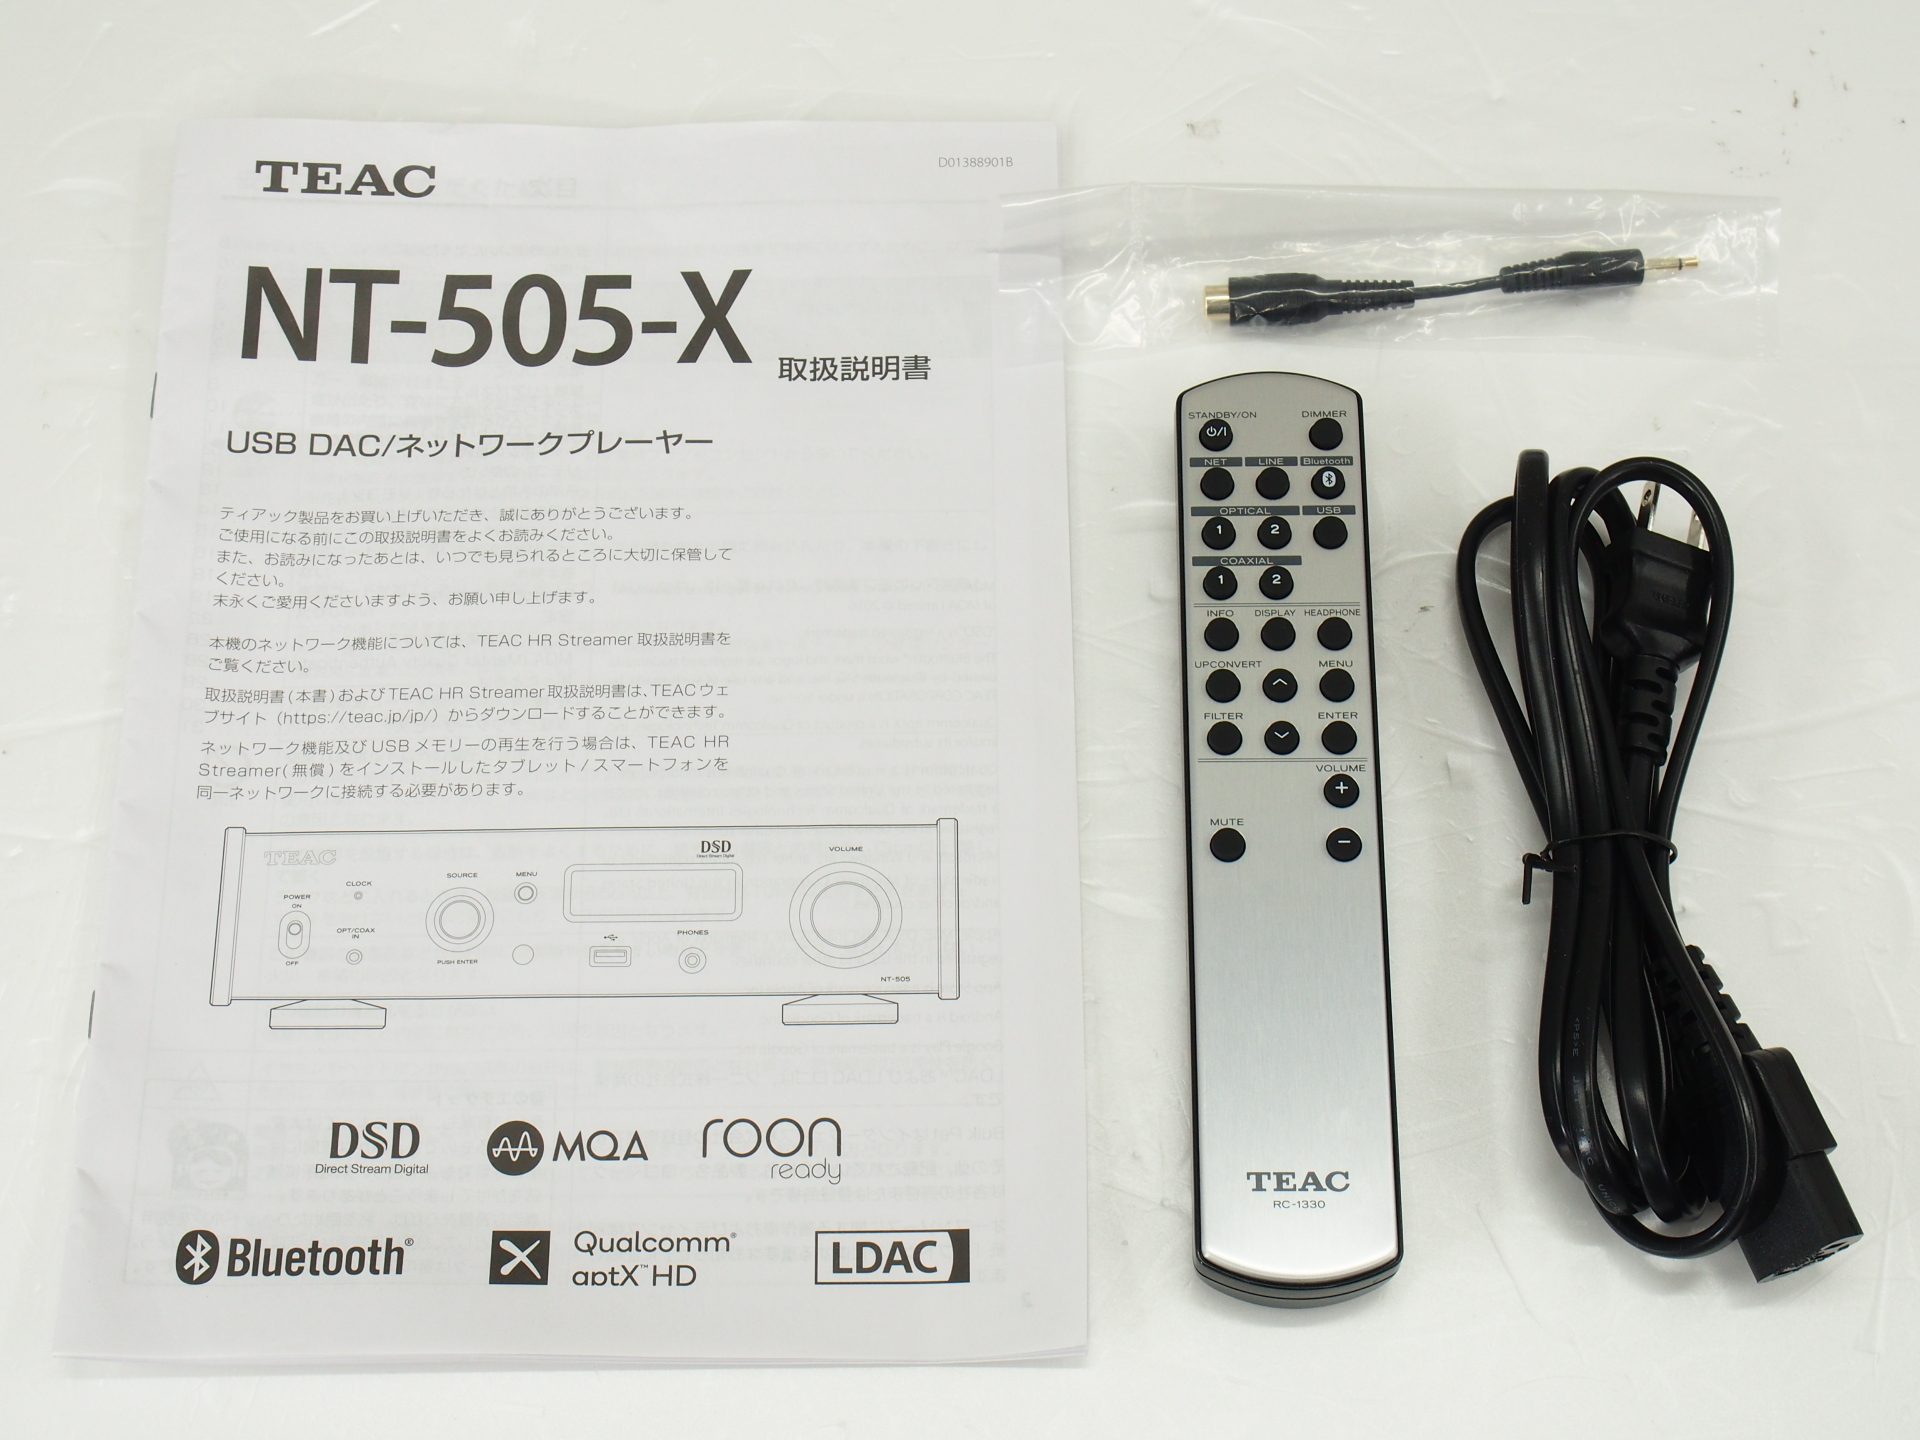 アバックWEB-SHOP / 【中古】TEAC NT-505-X(B)【コード01-10286】USB